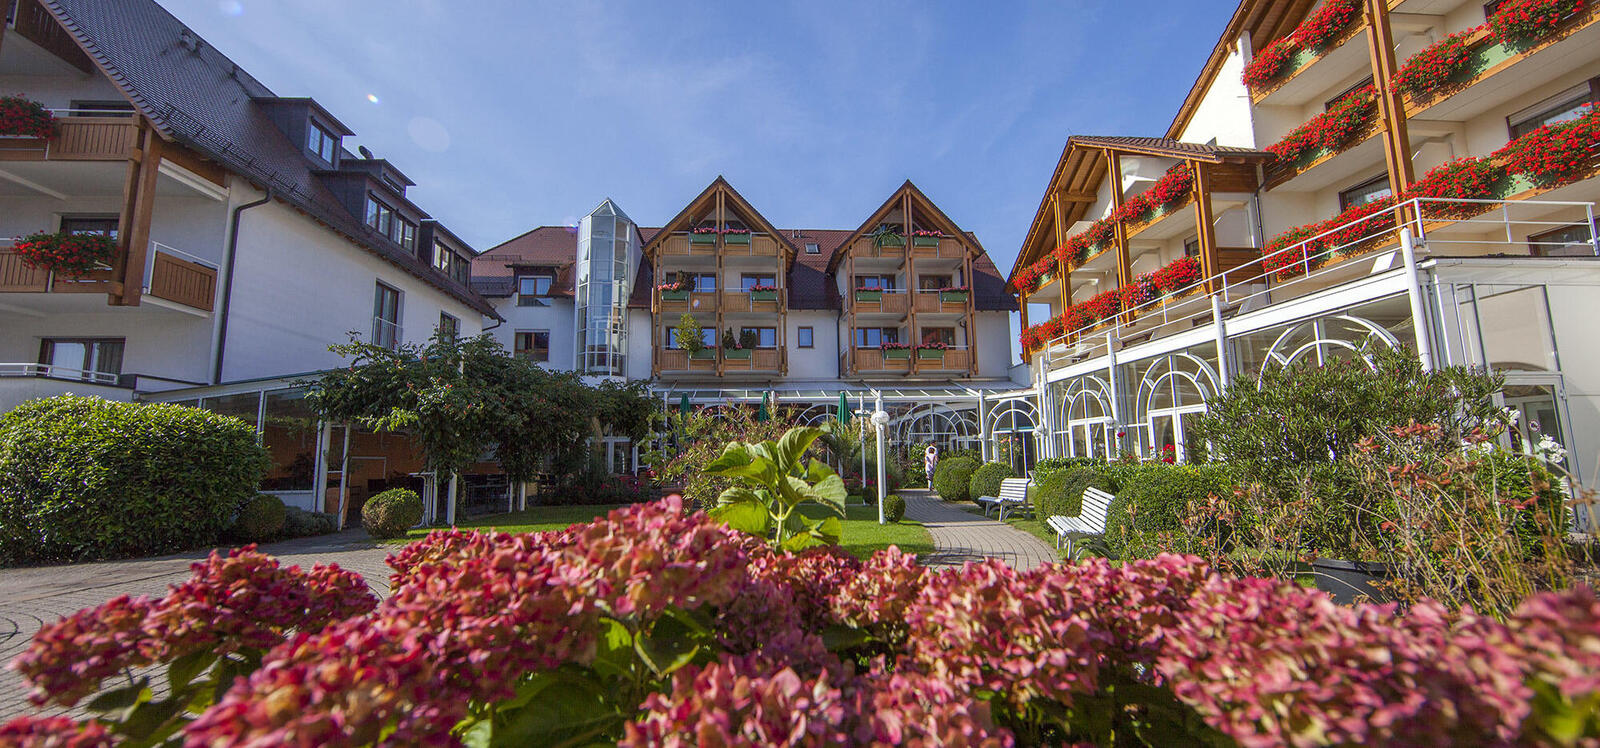 Das 4 Sterne Superior Hotel Ringhotel Krone in Friedrichshafen, am Stadtrand von Friedrichshafen gelegen und umgeben von Obstbaumwiesen